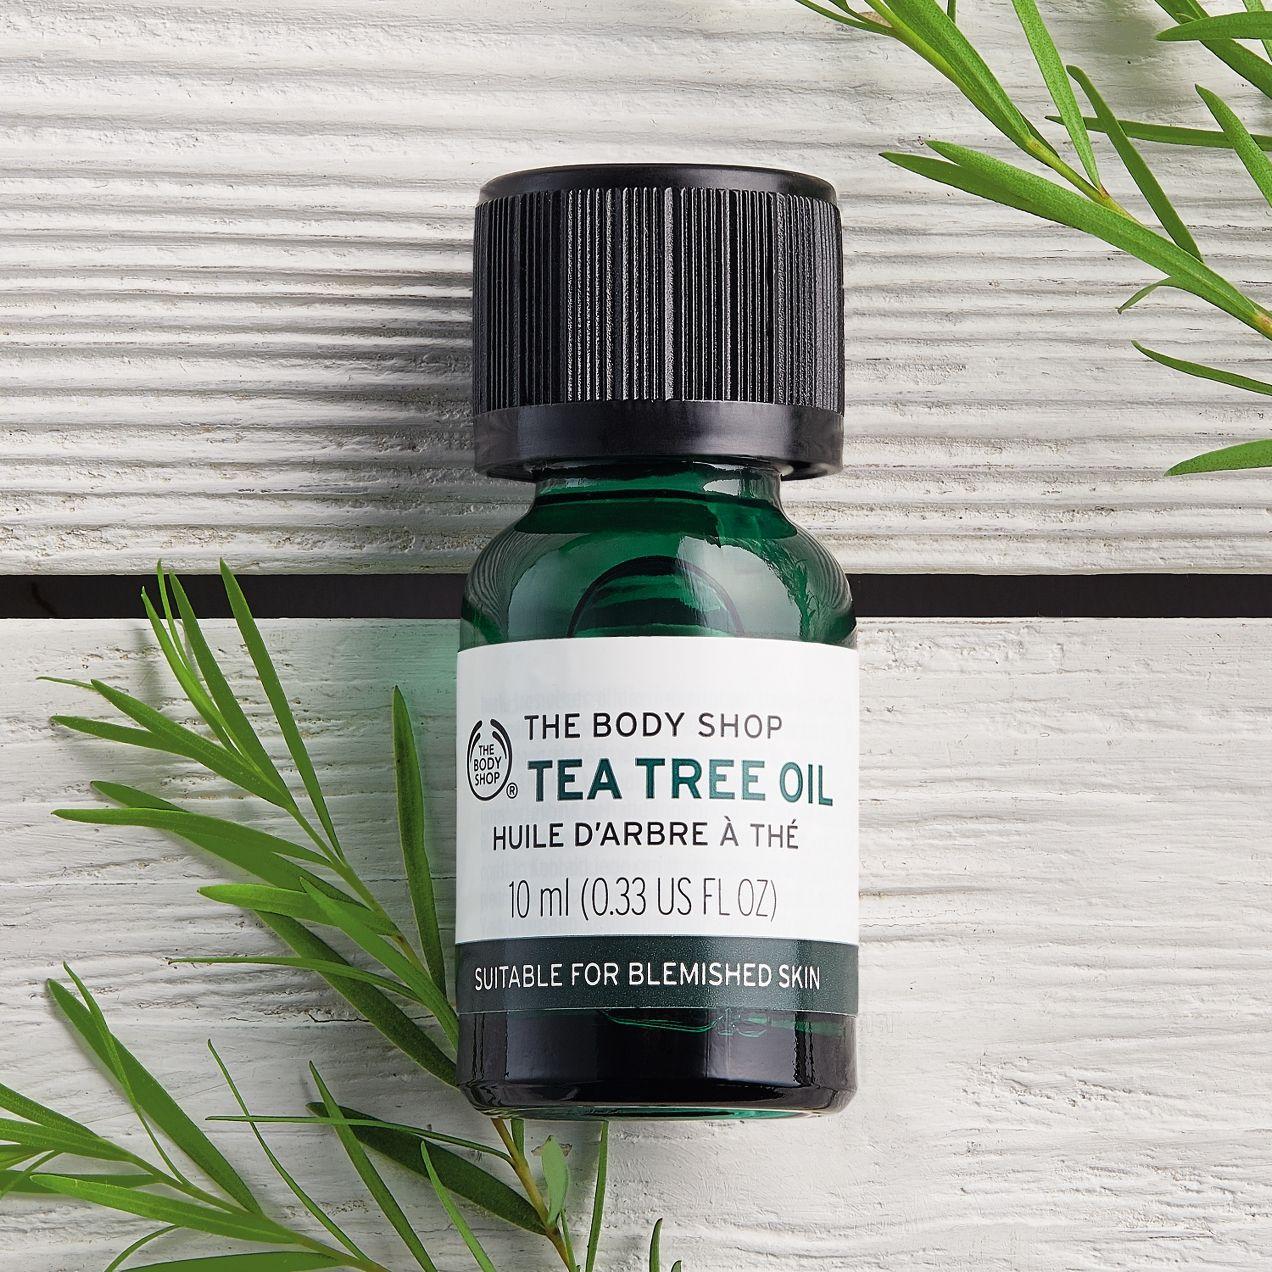 Tinh dầu nguyên chất Tea Tree oil